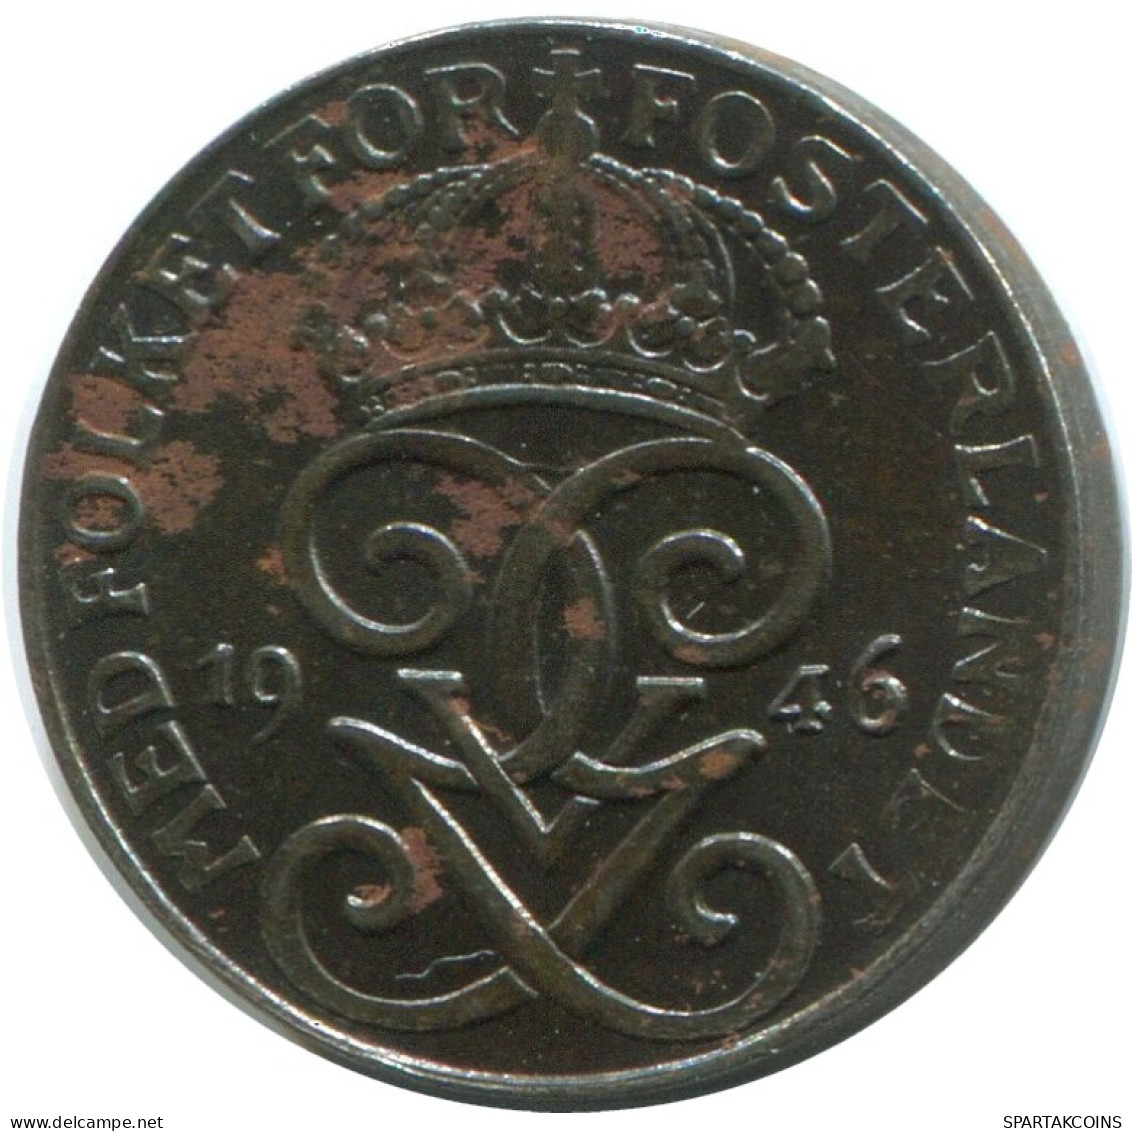 1 ORE 1946 SUECIA SWEDEN Moneda #AD310.2.E.A - Sweden